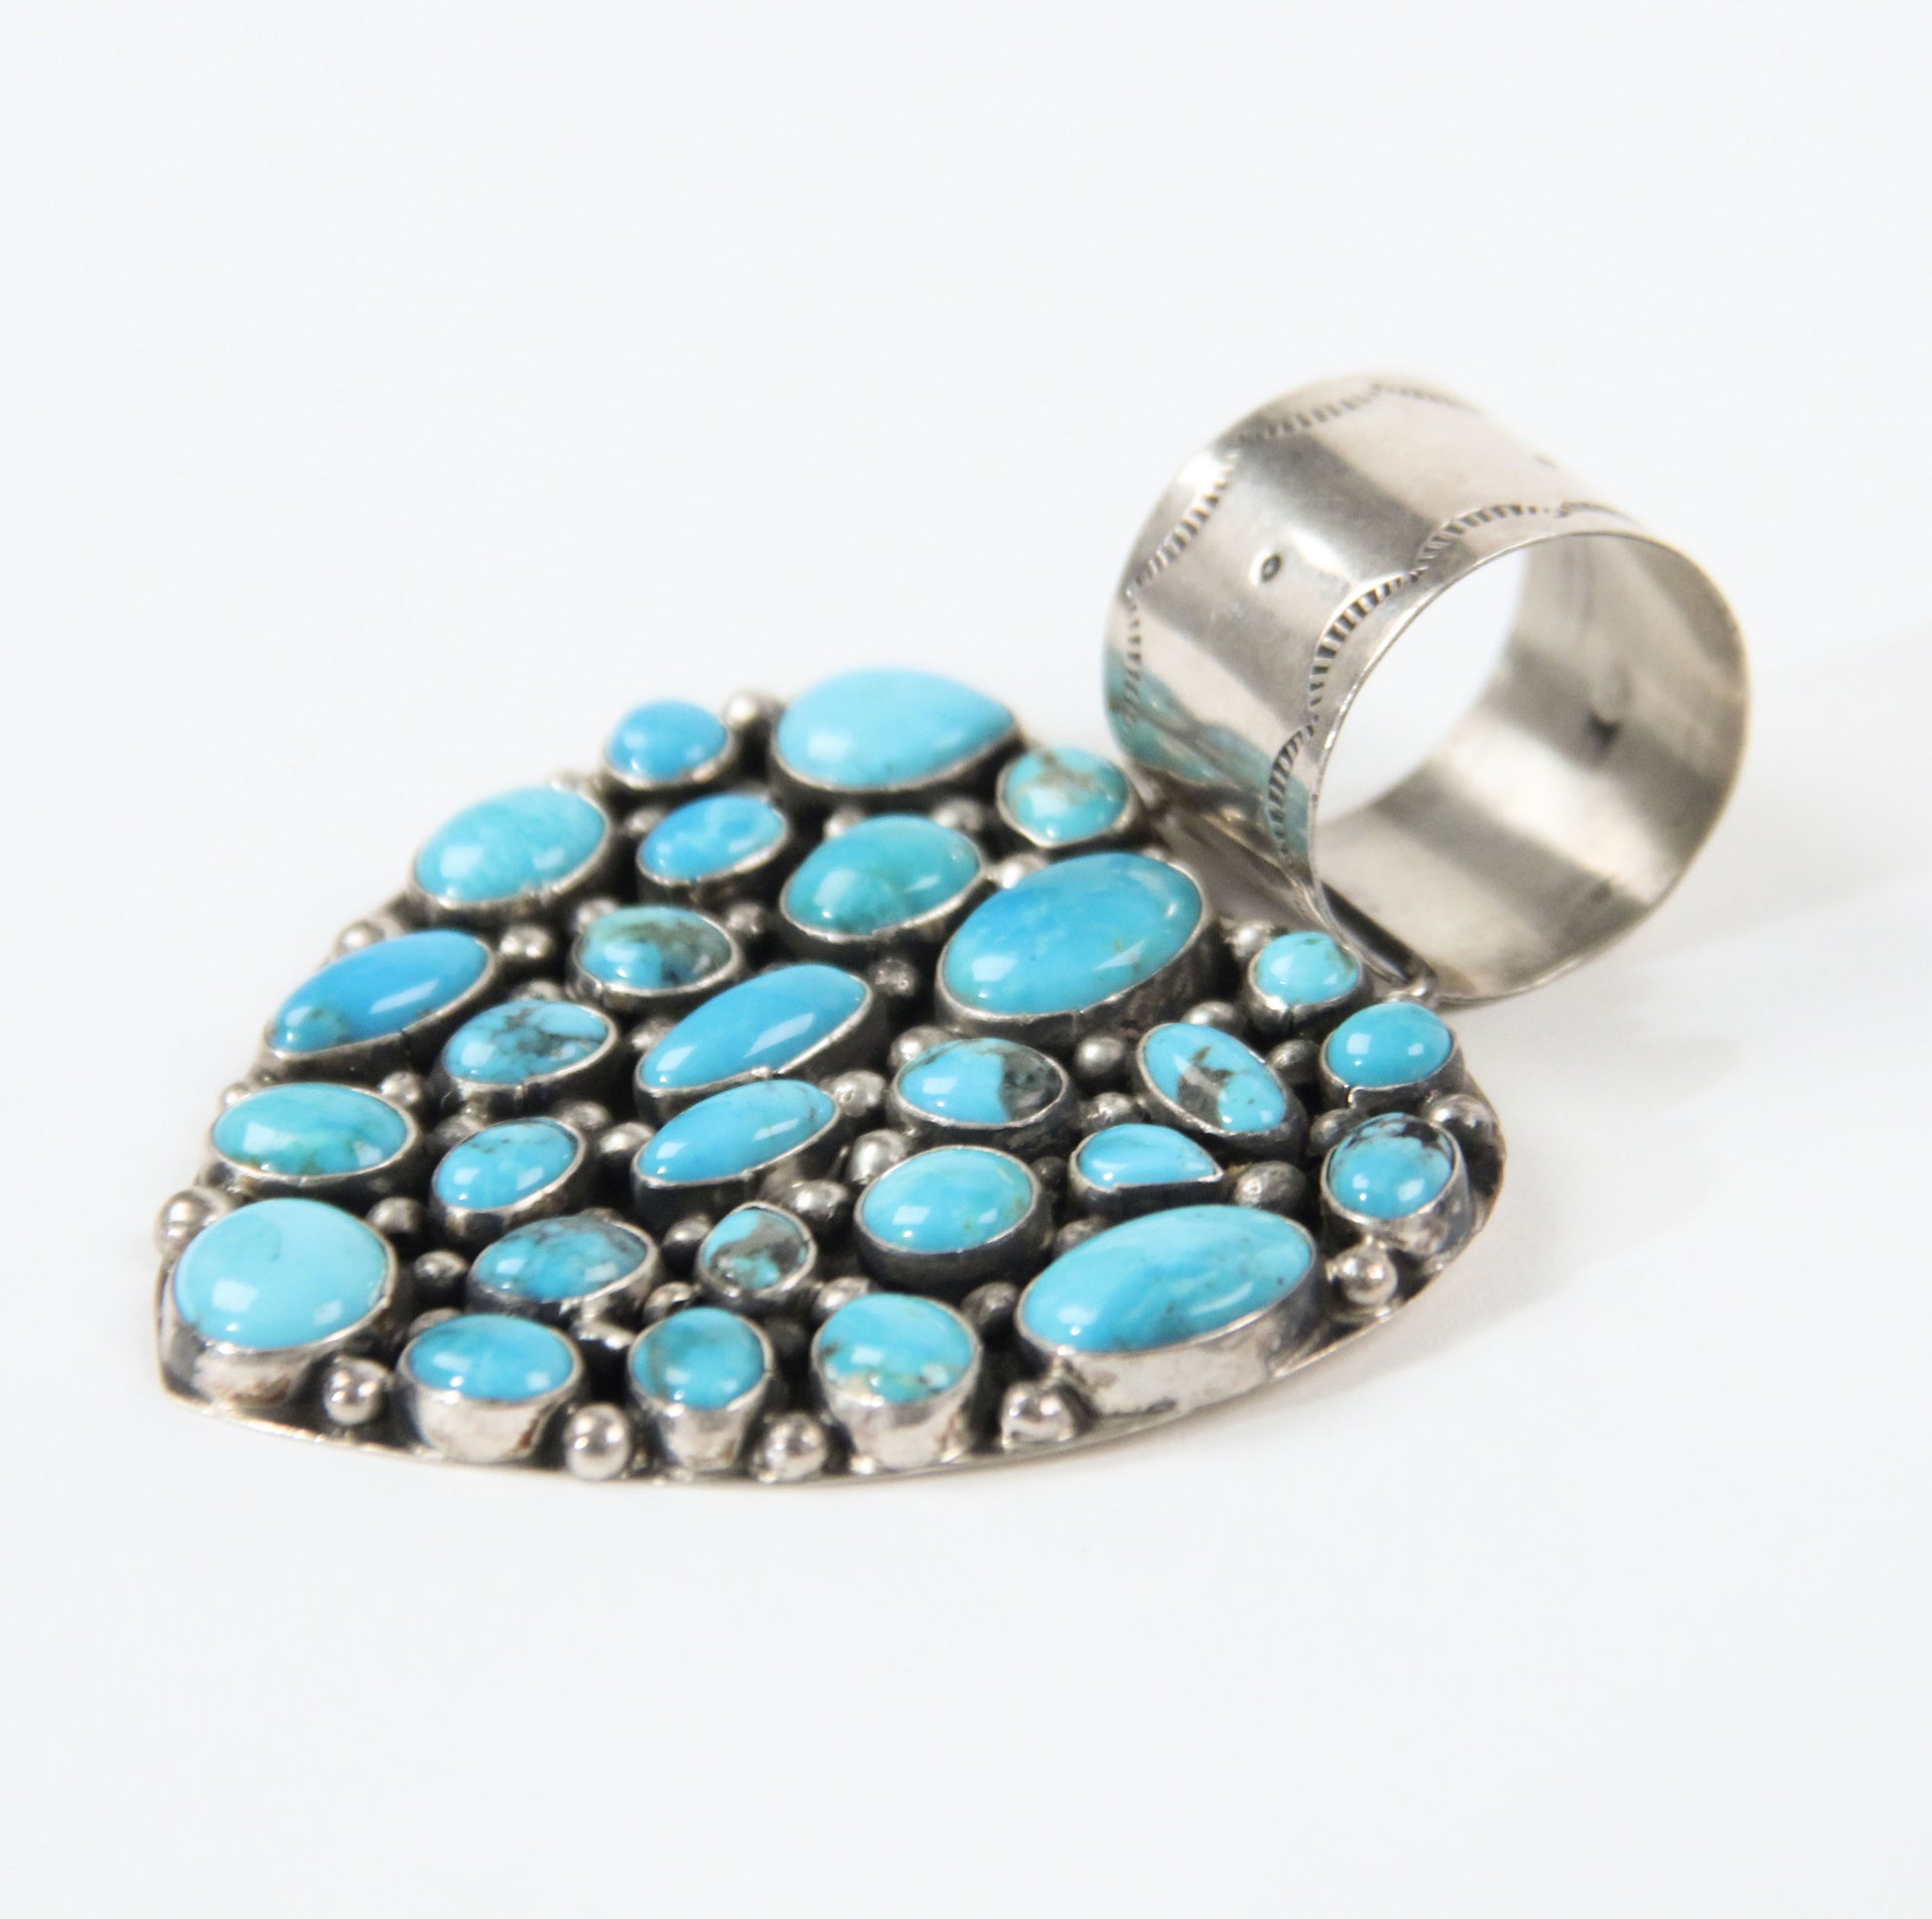 Turquoise heart pendant Rocki Gorman bold statement jewelry women western southwestern blue side view